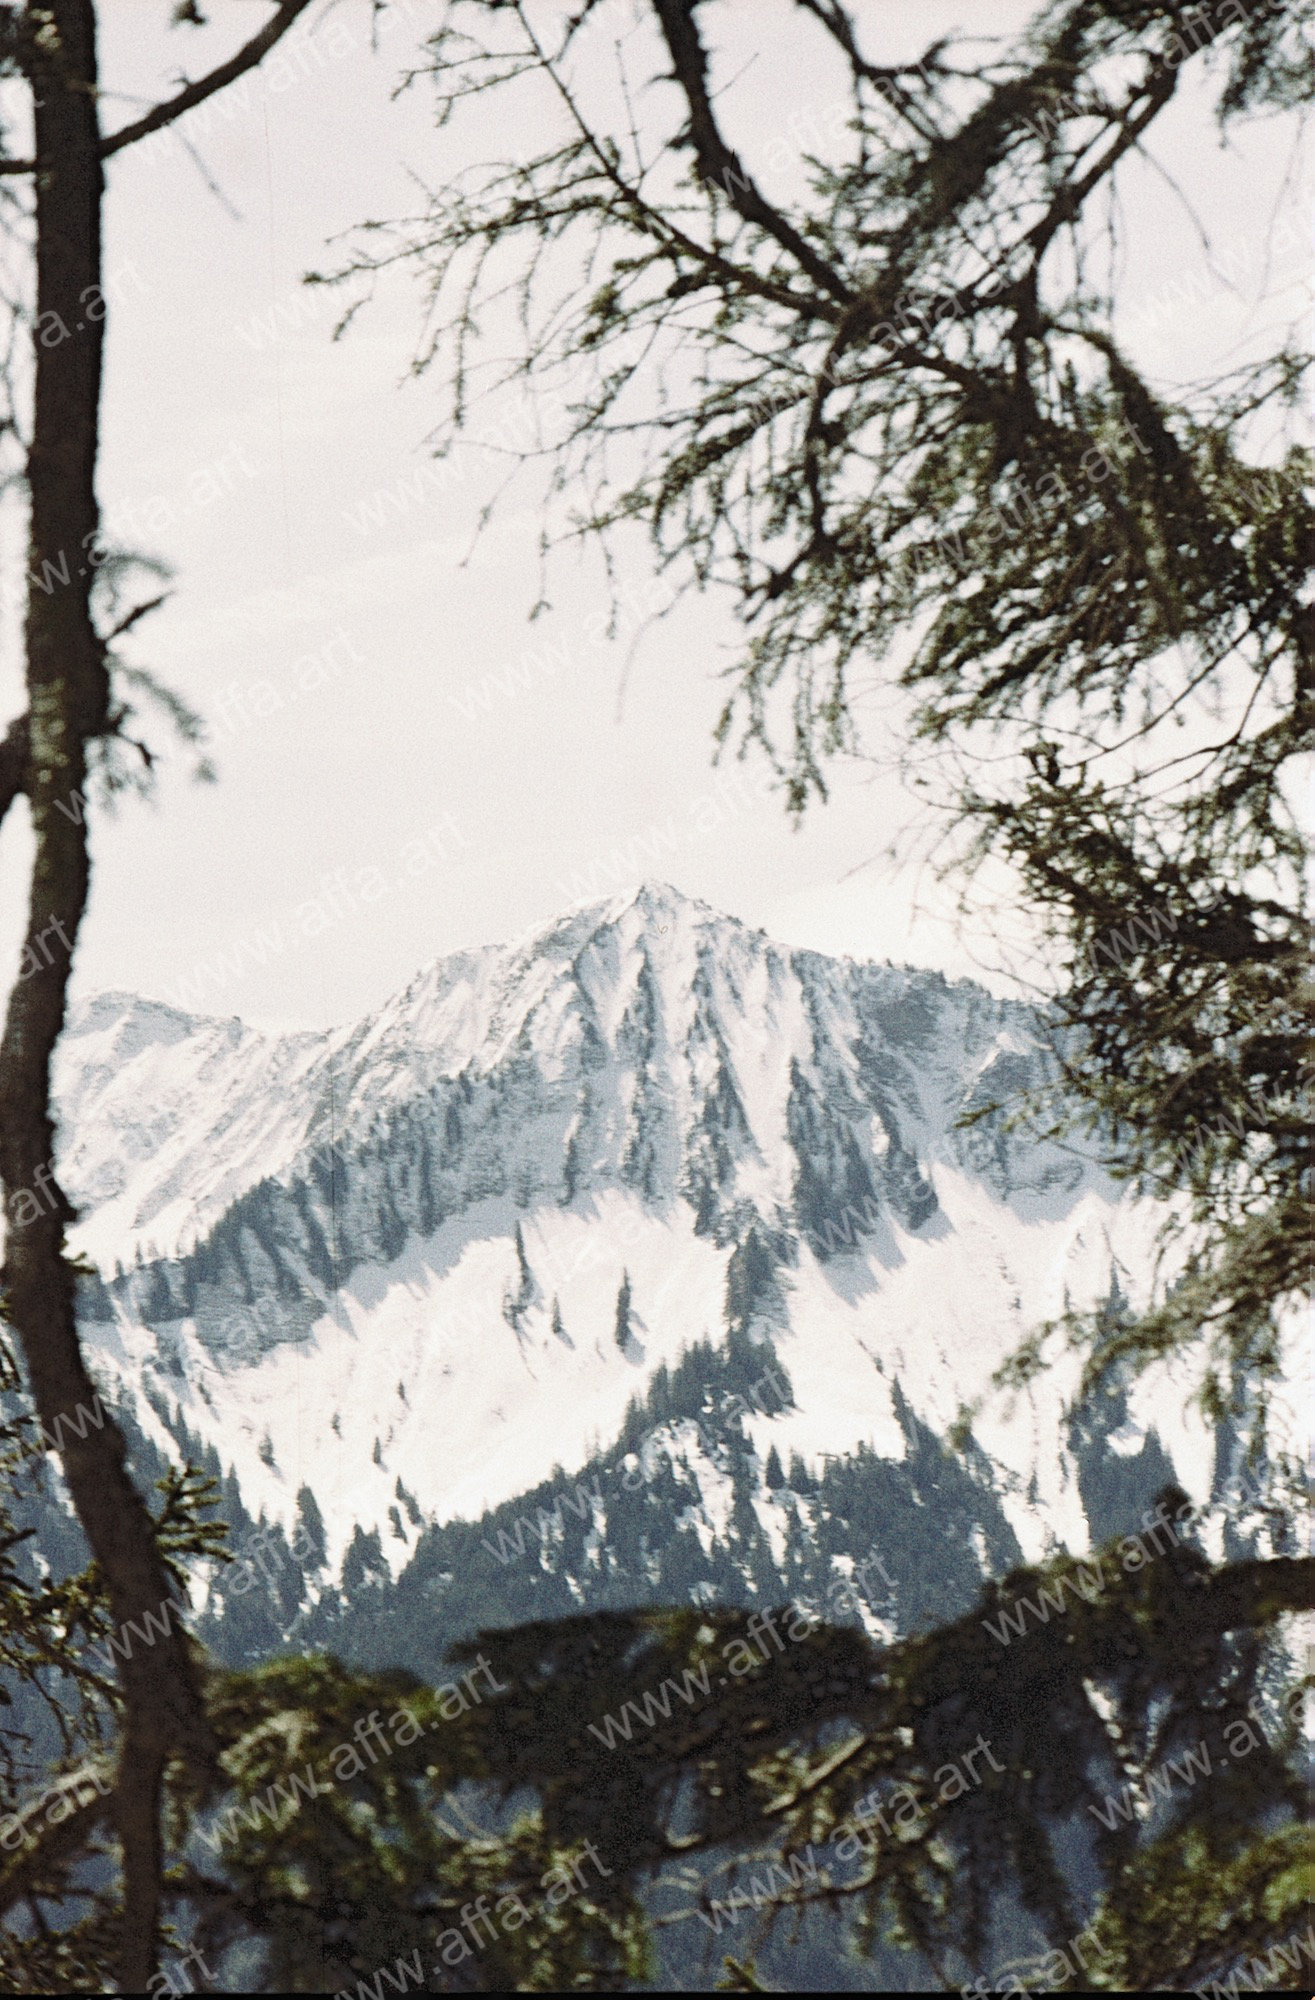 Snowy Mountain Art - Nostalgic mountain